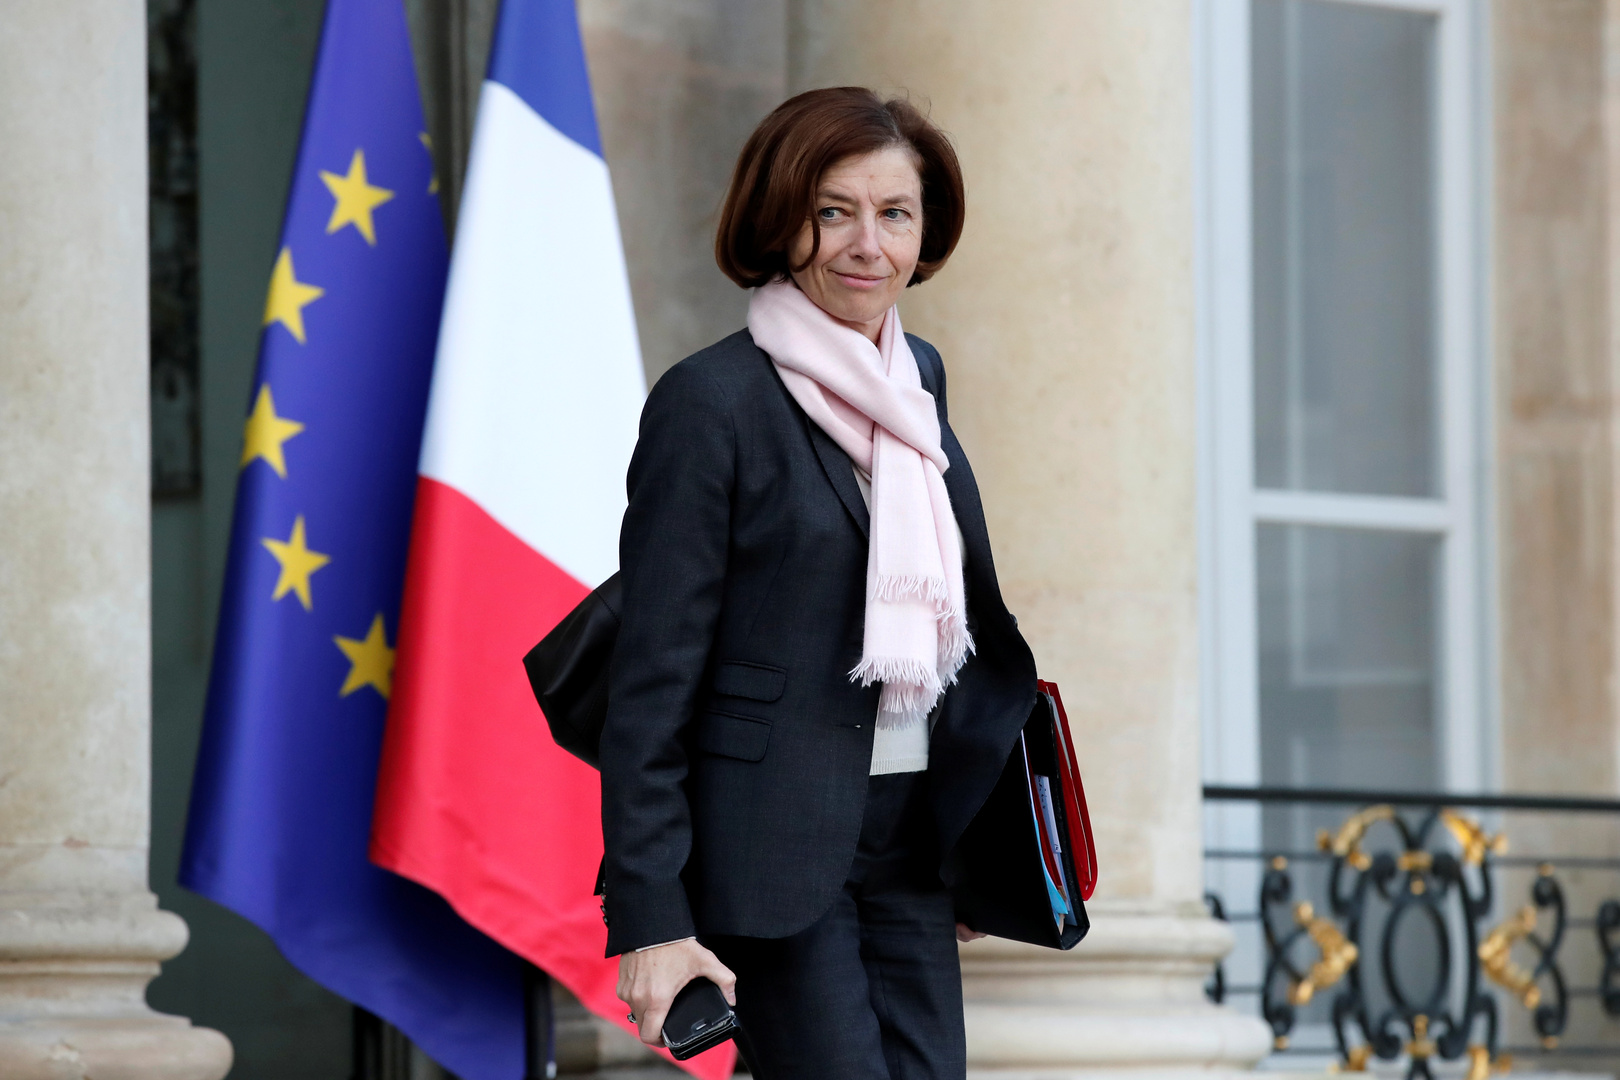 وزيرة الدفاع الفرنسية تدعو لحماية الاتفاق النووي مع إيران ومنع تصعيد التوتر